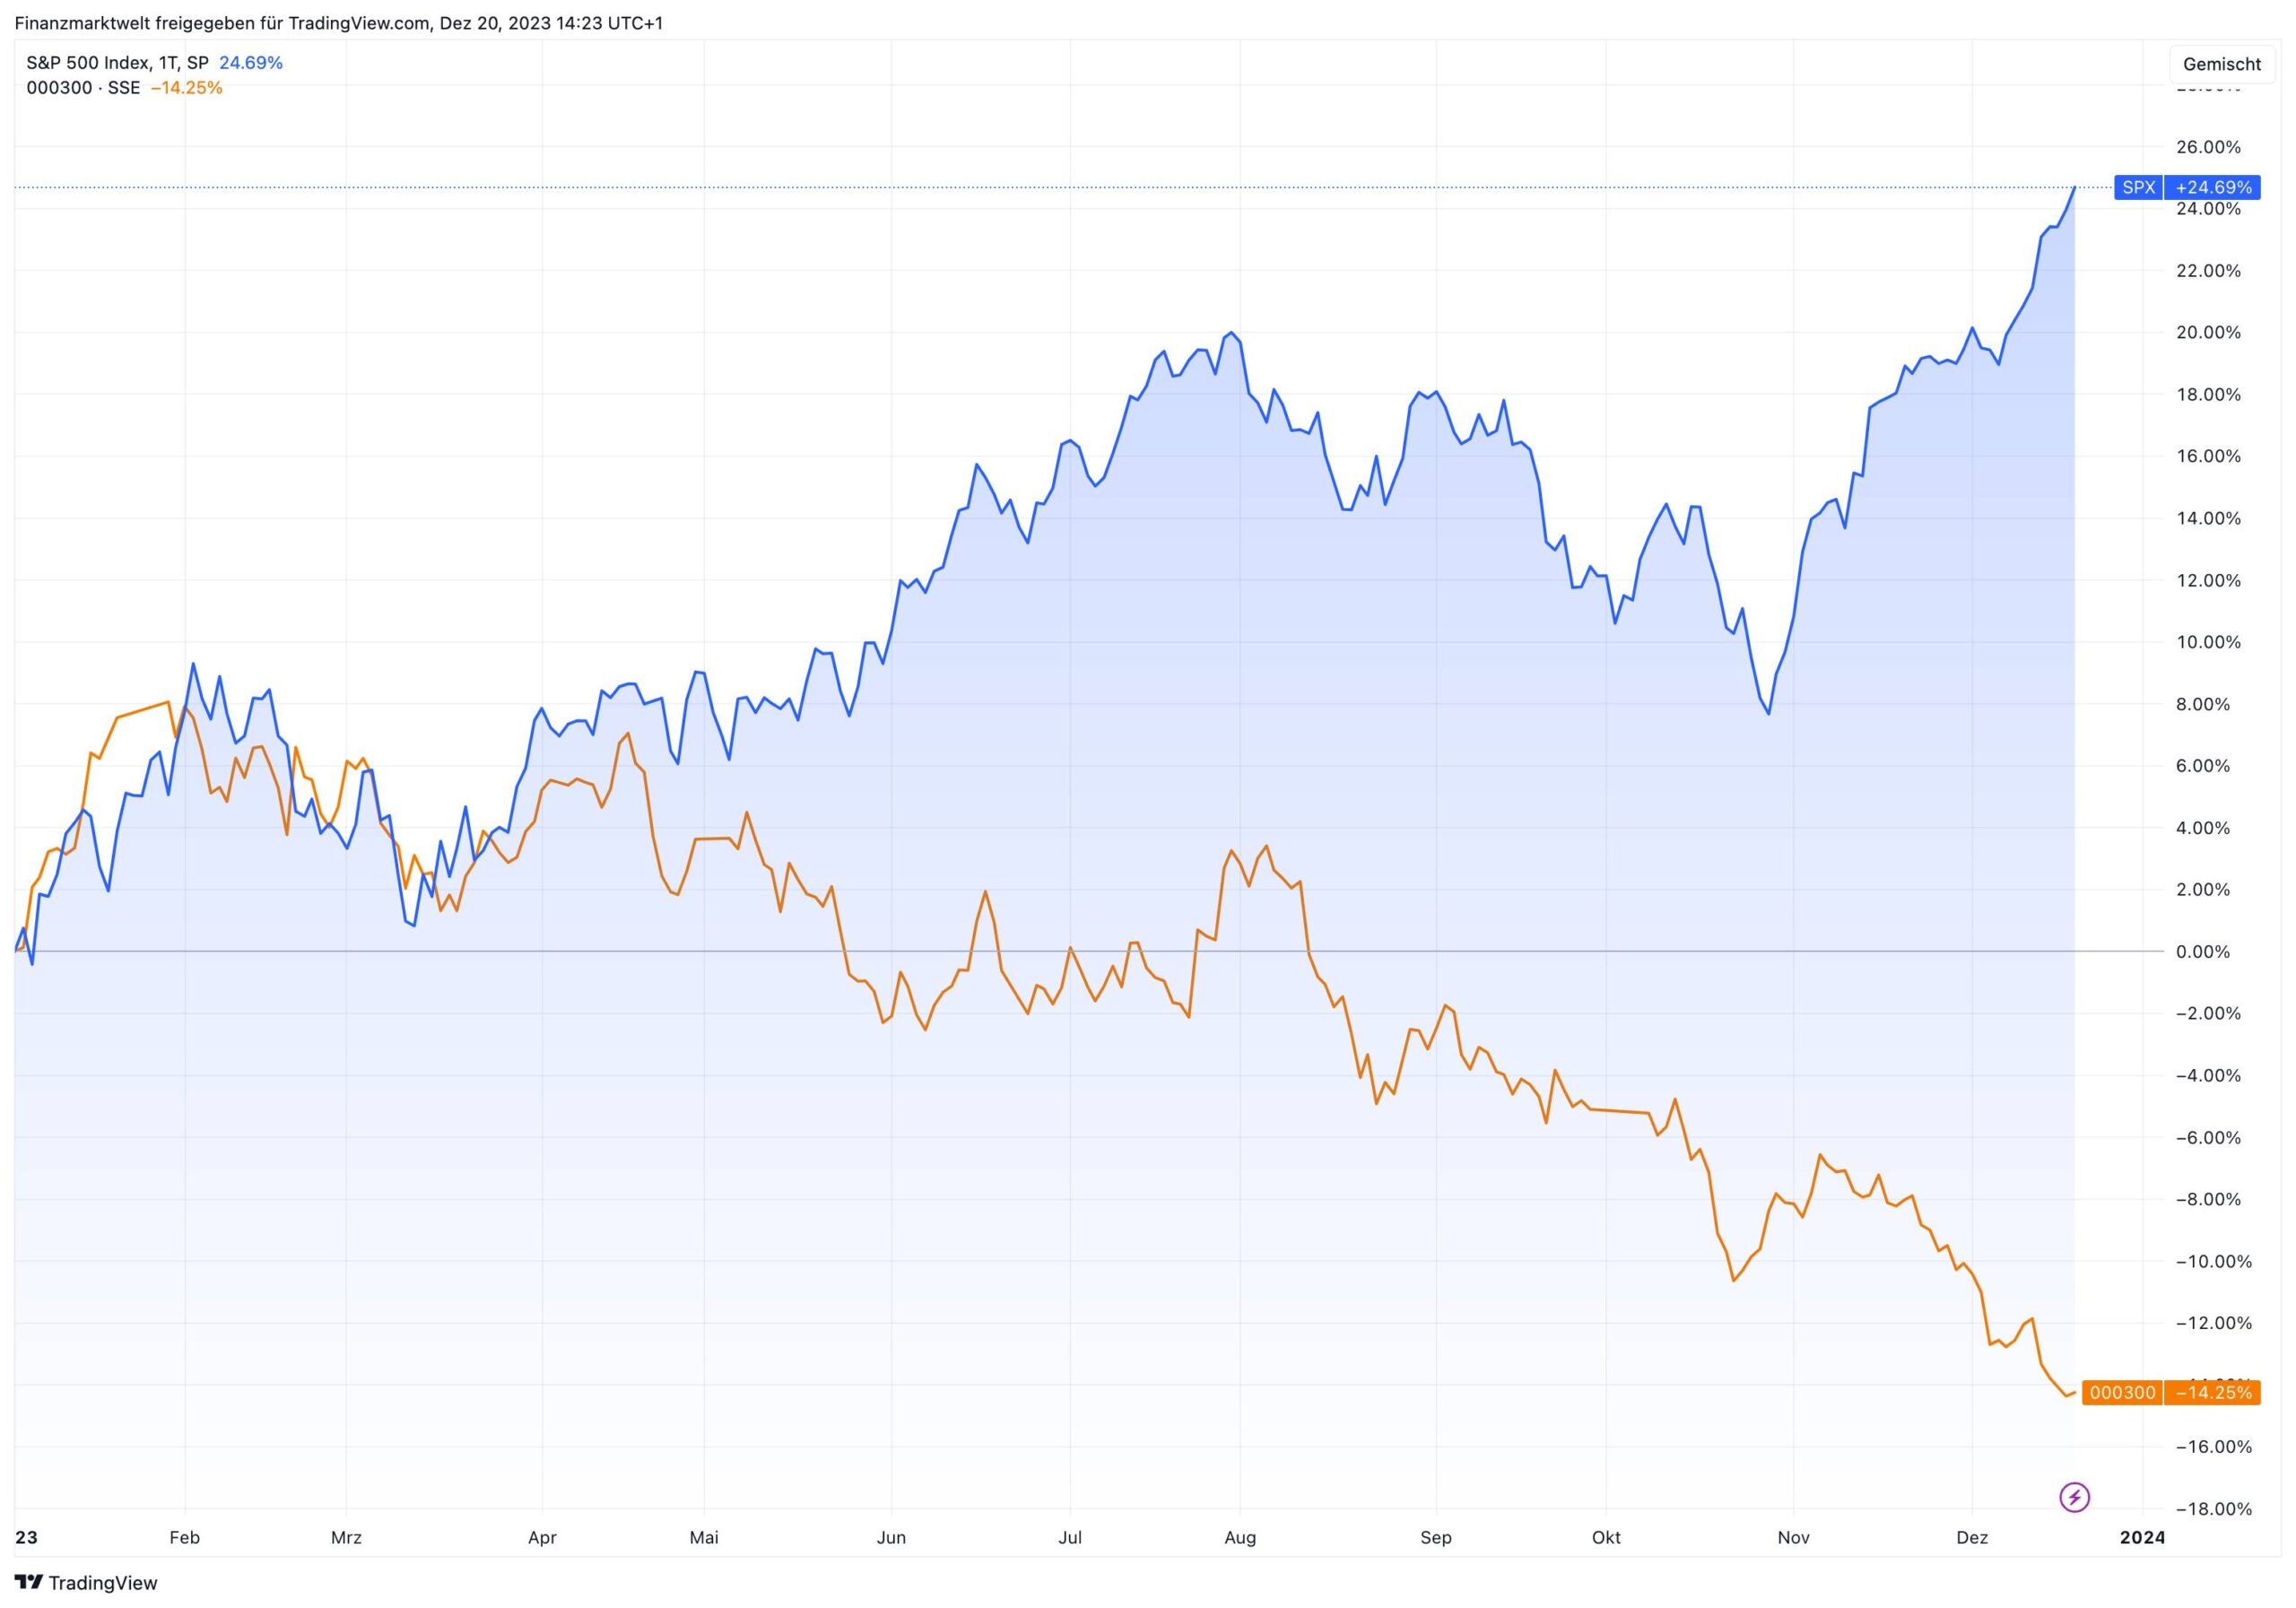 Grafik vergleicht Performance von S&P 500 mit China-Leitindex CSI 300